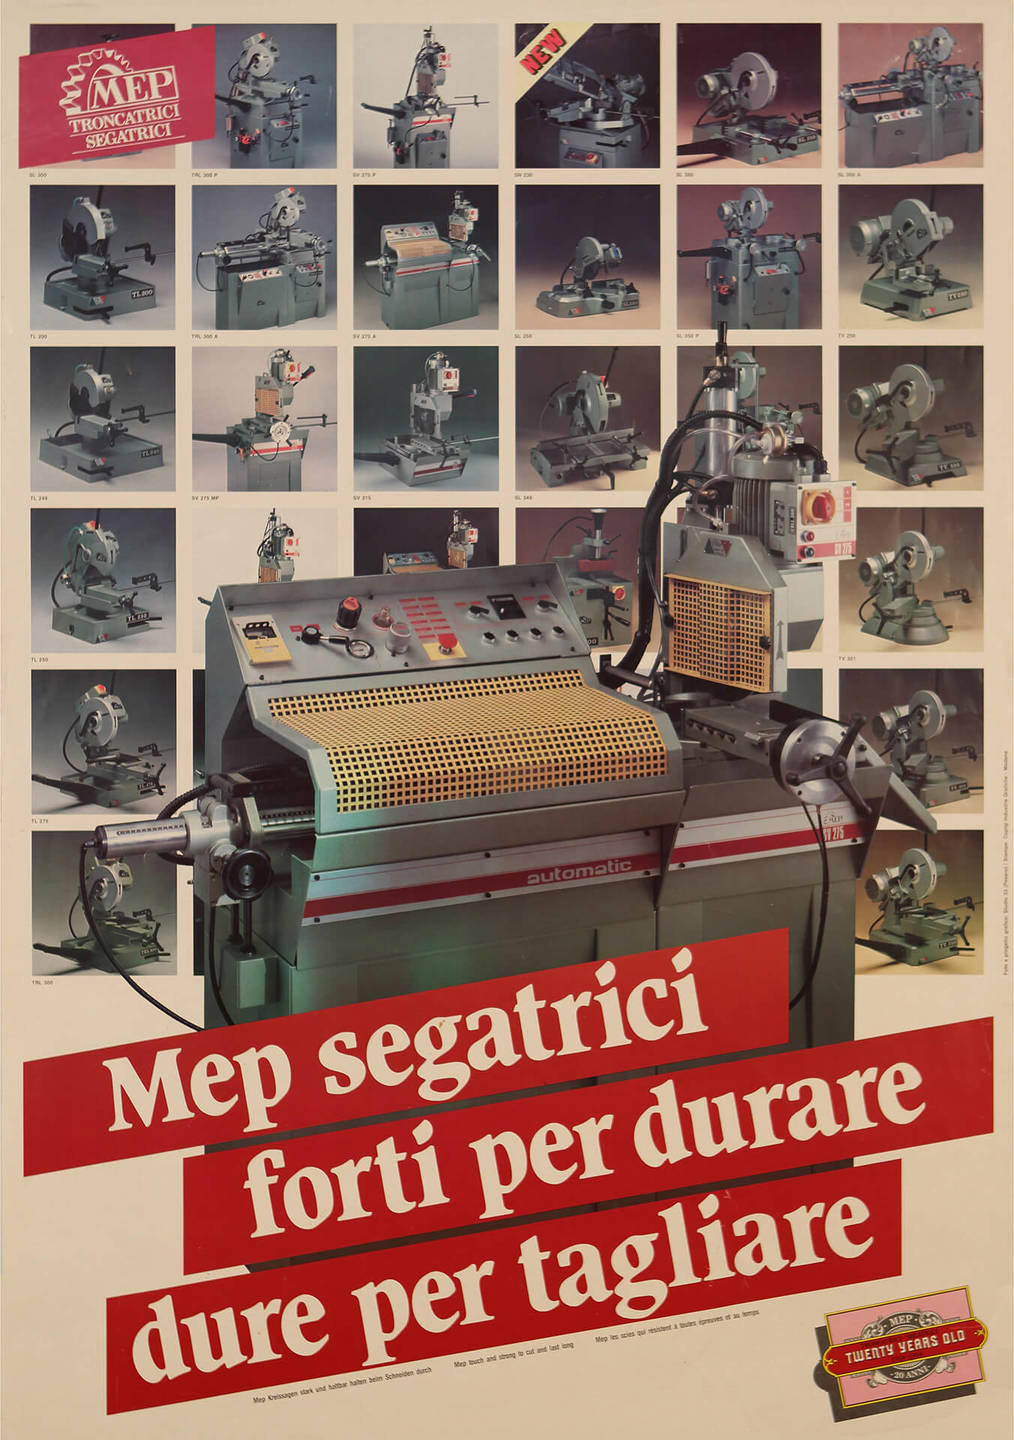 Circular sawing machines of Mep Segatrici  | © MEP S.p.A. - Circular and band sawing machines to cut metals